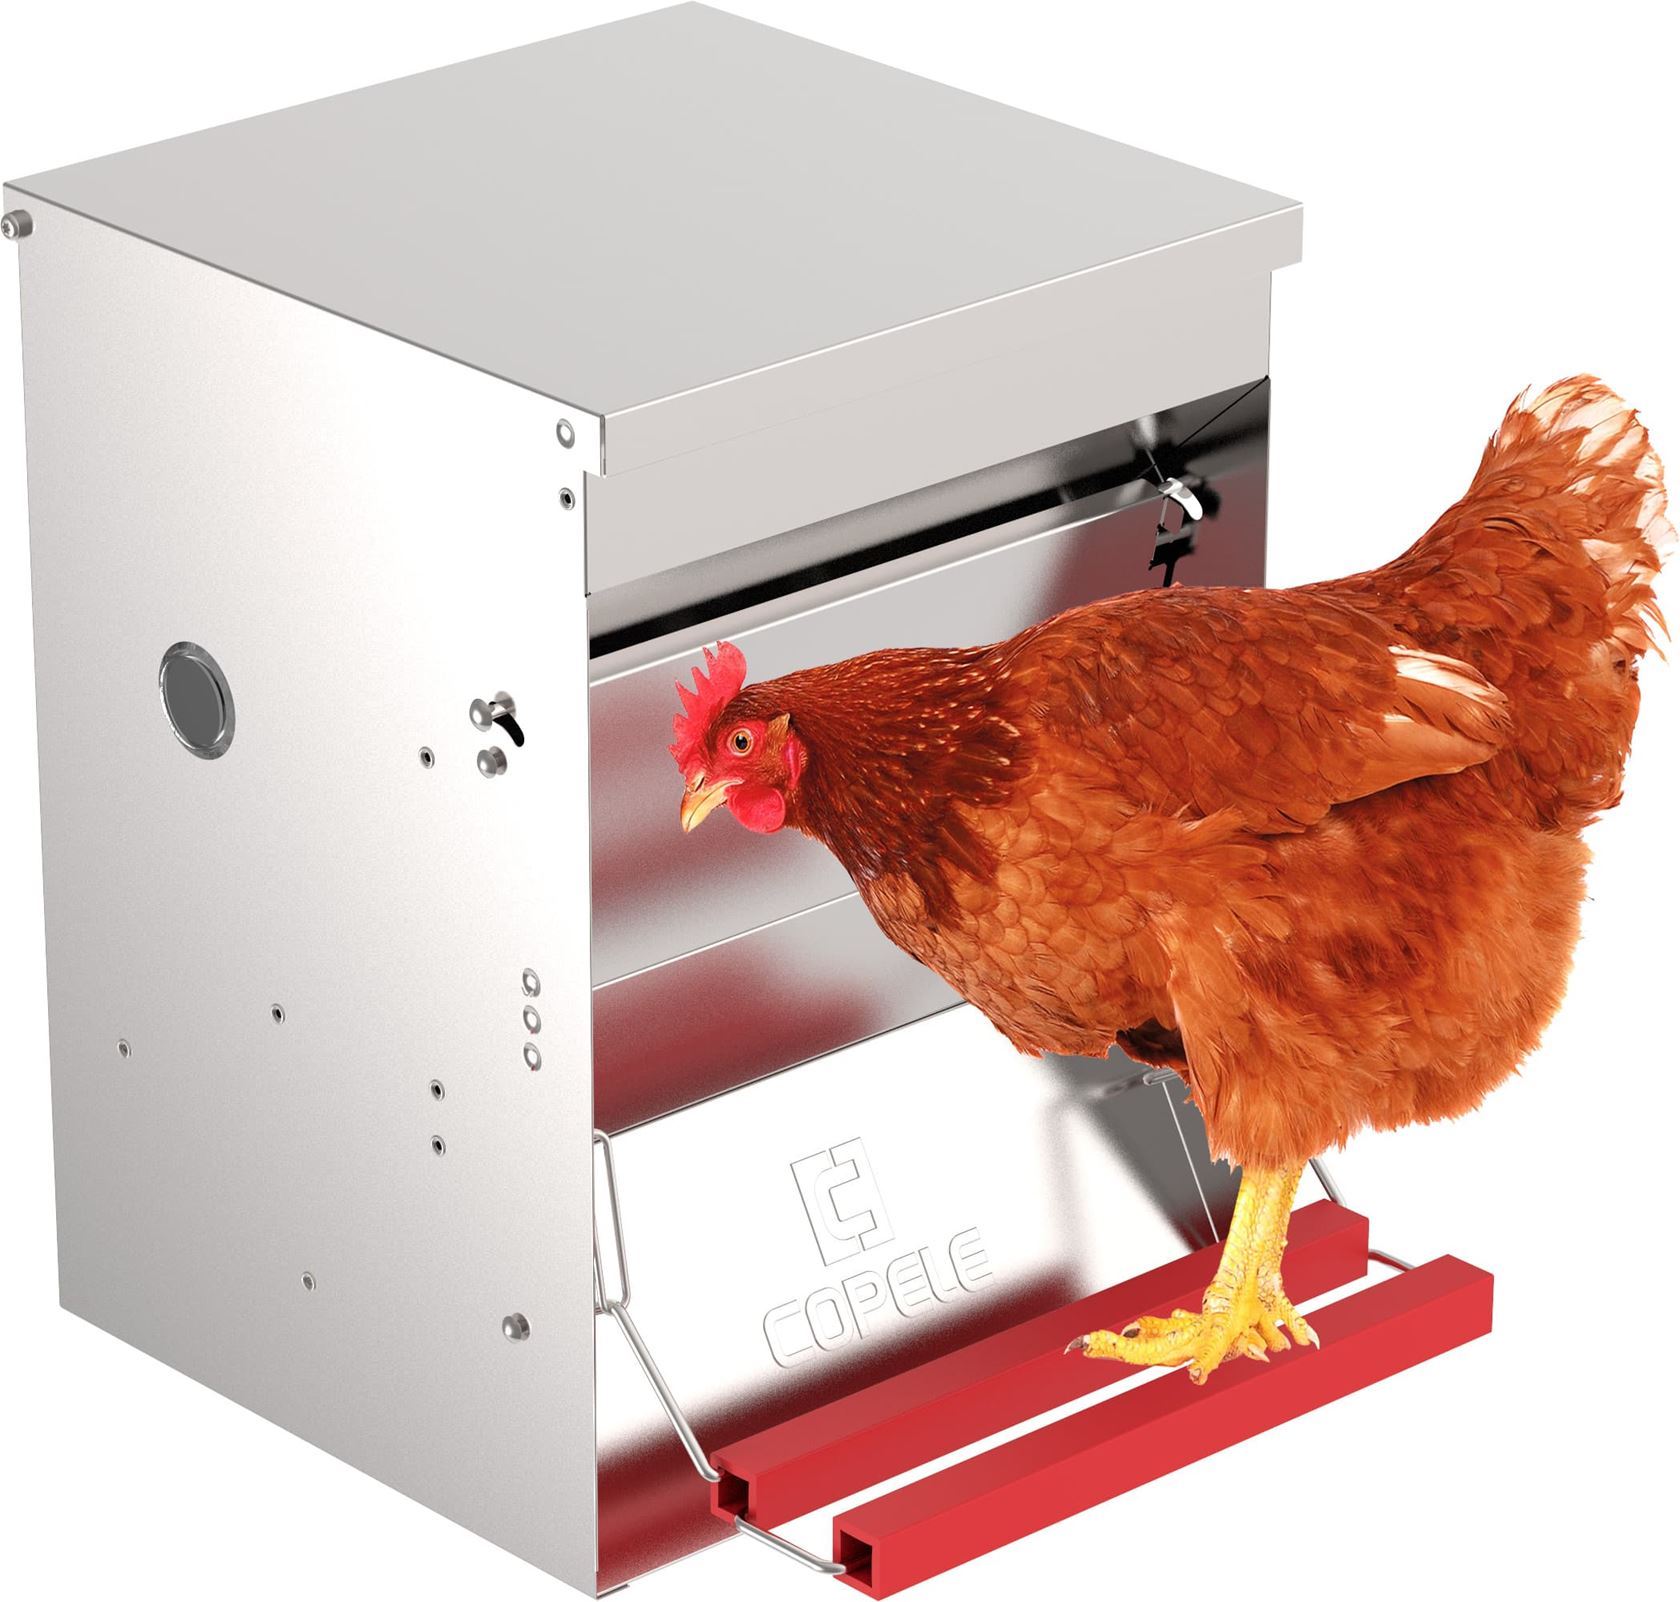 het is nutteloos Blanco telefoon Automatische trapbak voederbak voor kippen - 20kg - 30x30x55cm - Hermie.com  - Alles voor uw huis & tuin online!